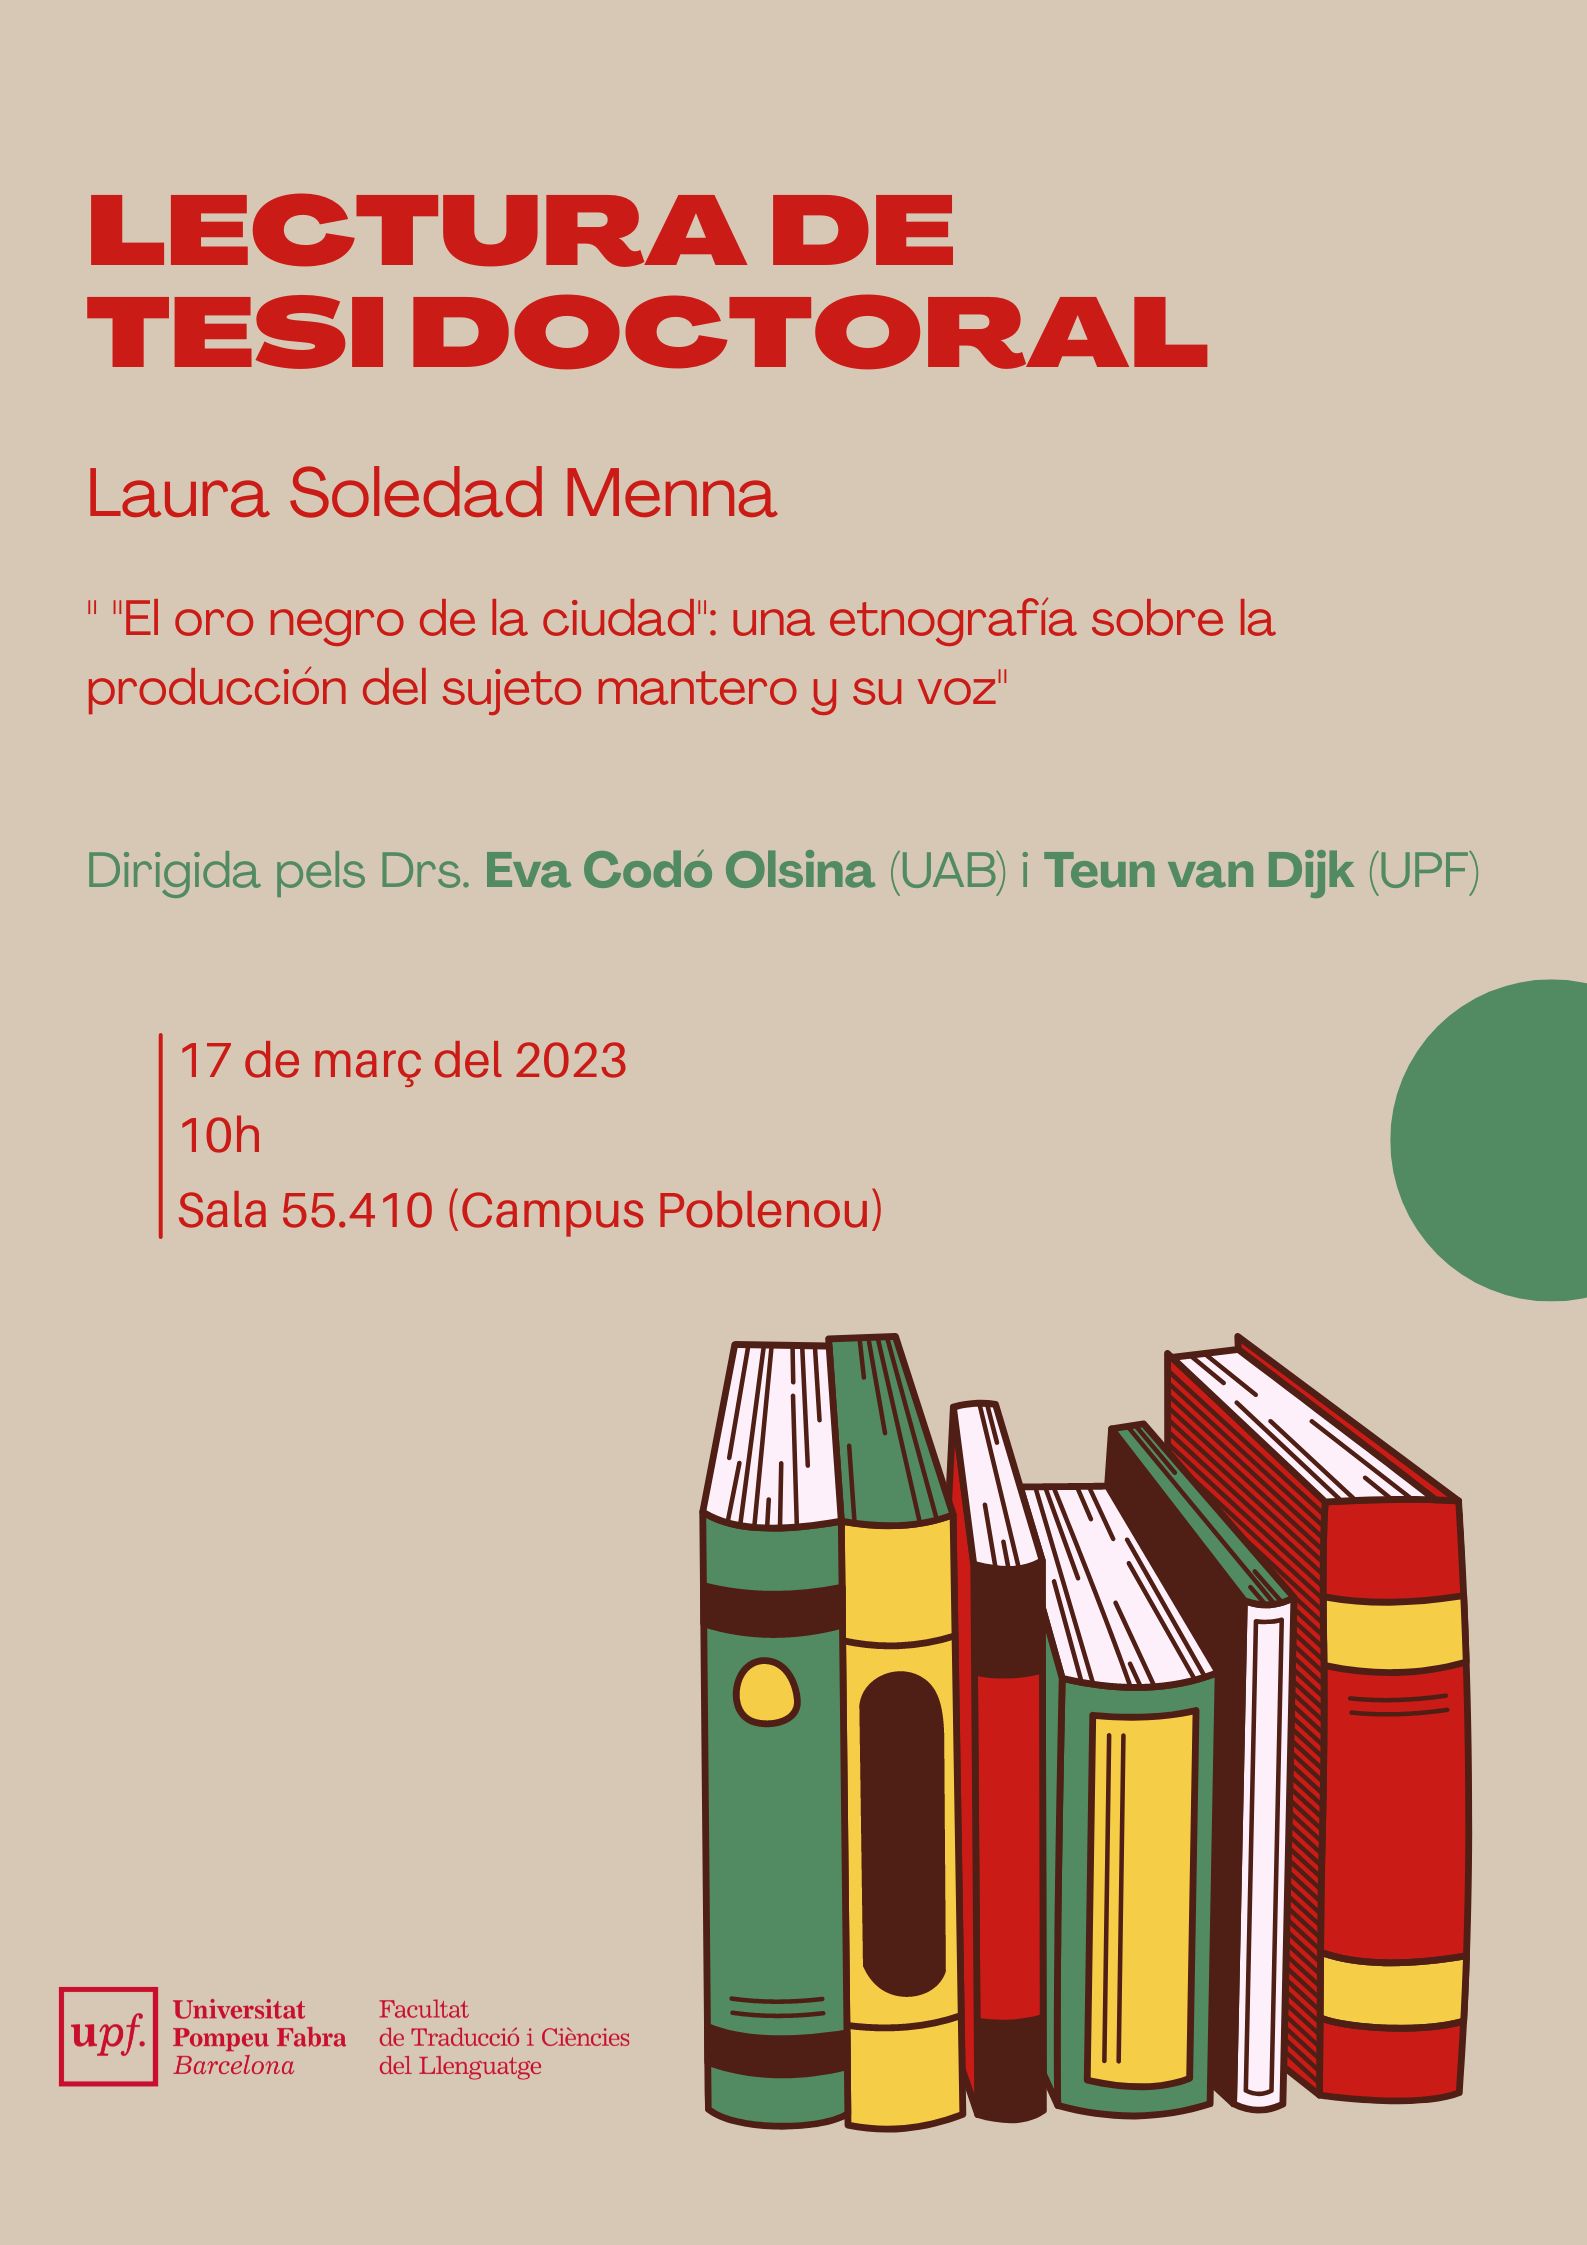 17/03/2023 Lectura de la tesi doctoral de Laura Soledad Menna, a les 10.00 hores